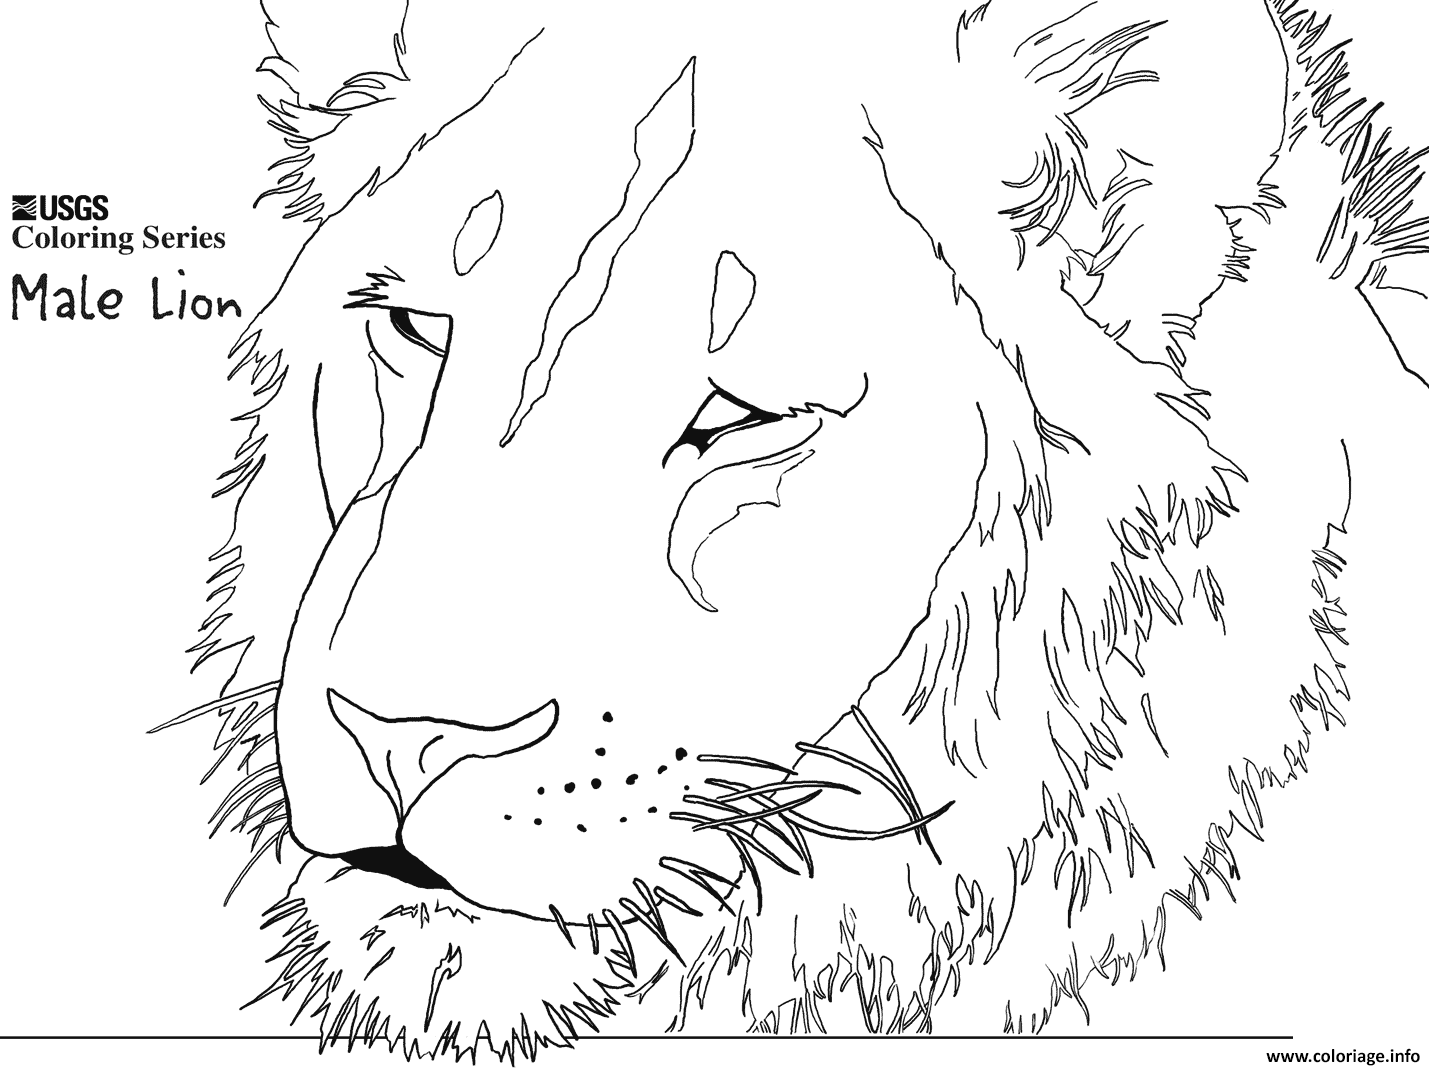 Dessin male lion head Coloriage Gratuit à Imprimer